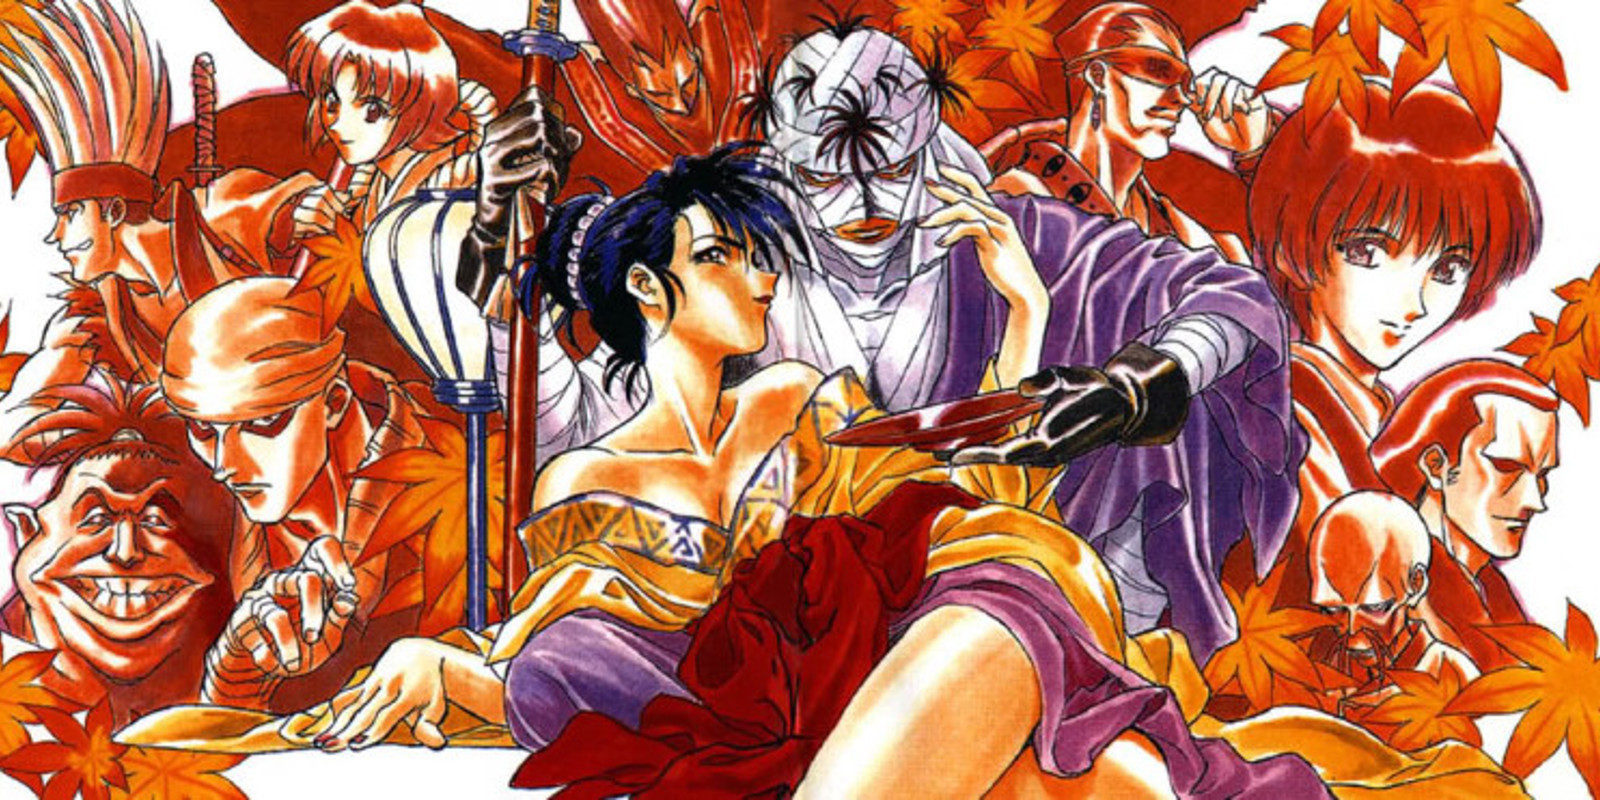 El creador de 'Rurouni Kenshin' acusado de delito de pornografía infantil